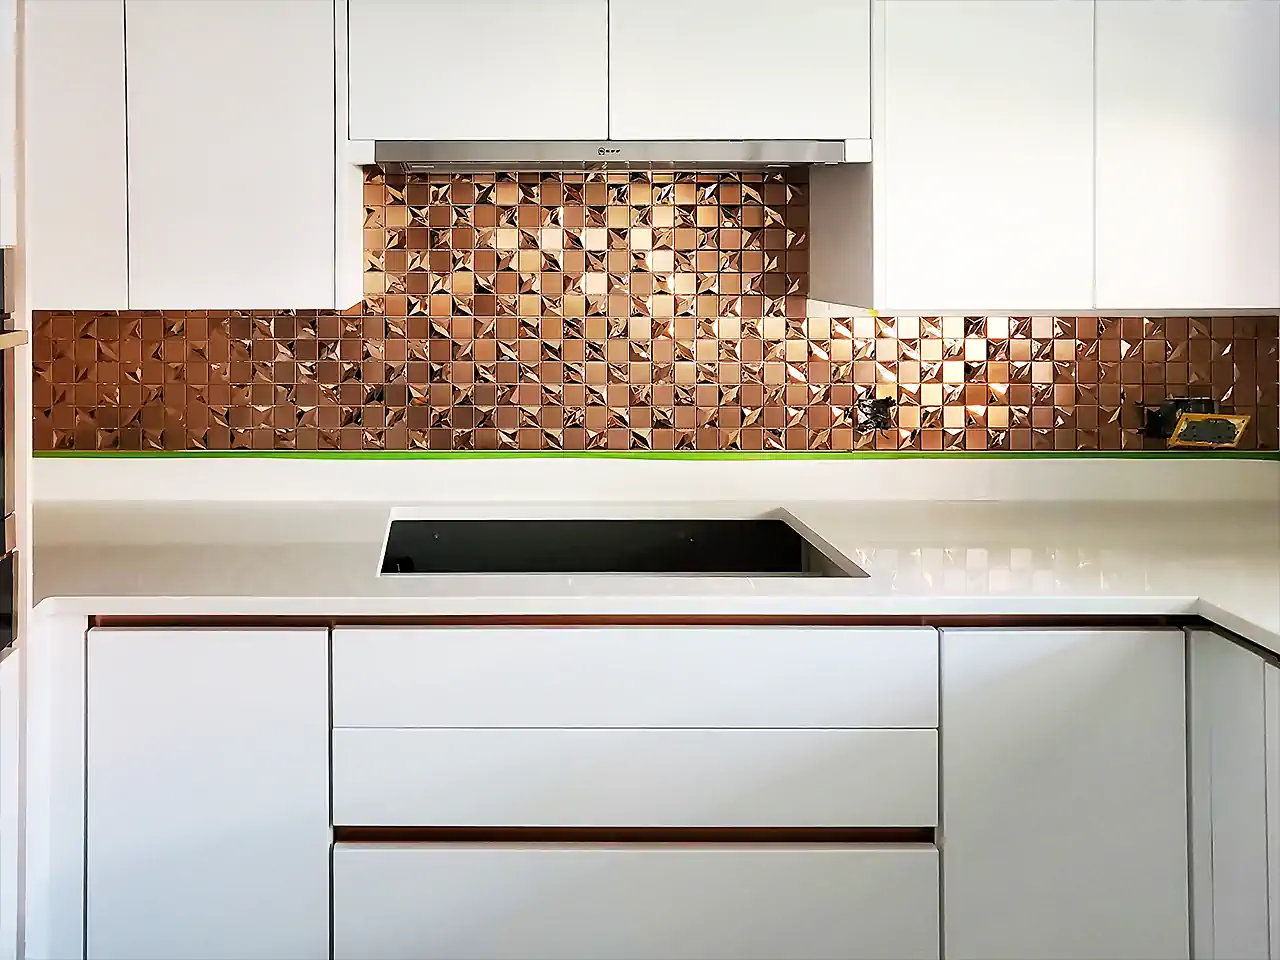 3D Rose Gold Tile as Kitchen Backsplash Kitchen wall tiles Design Ideas 01